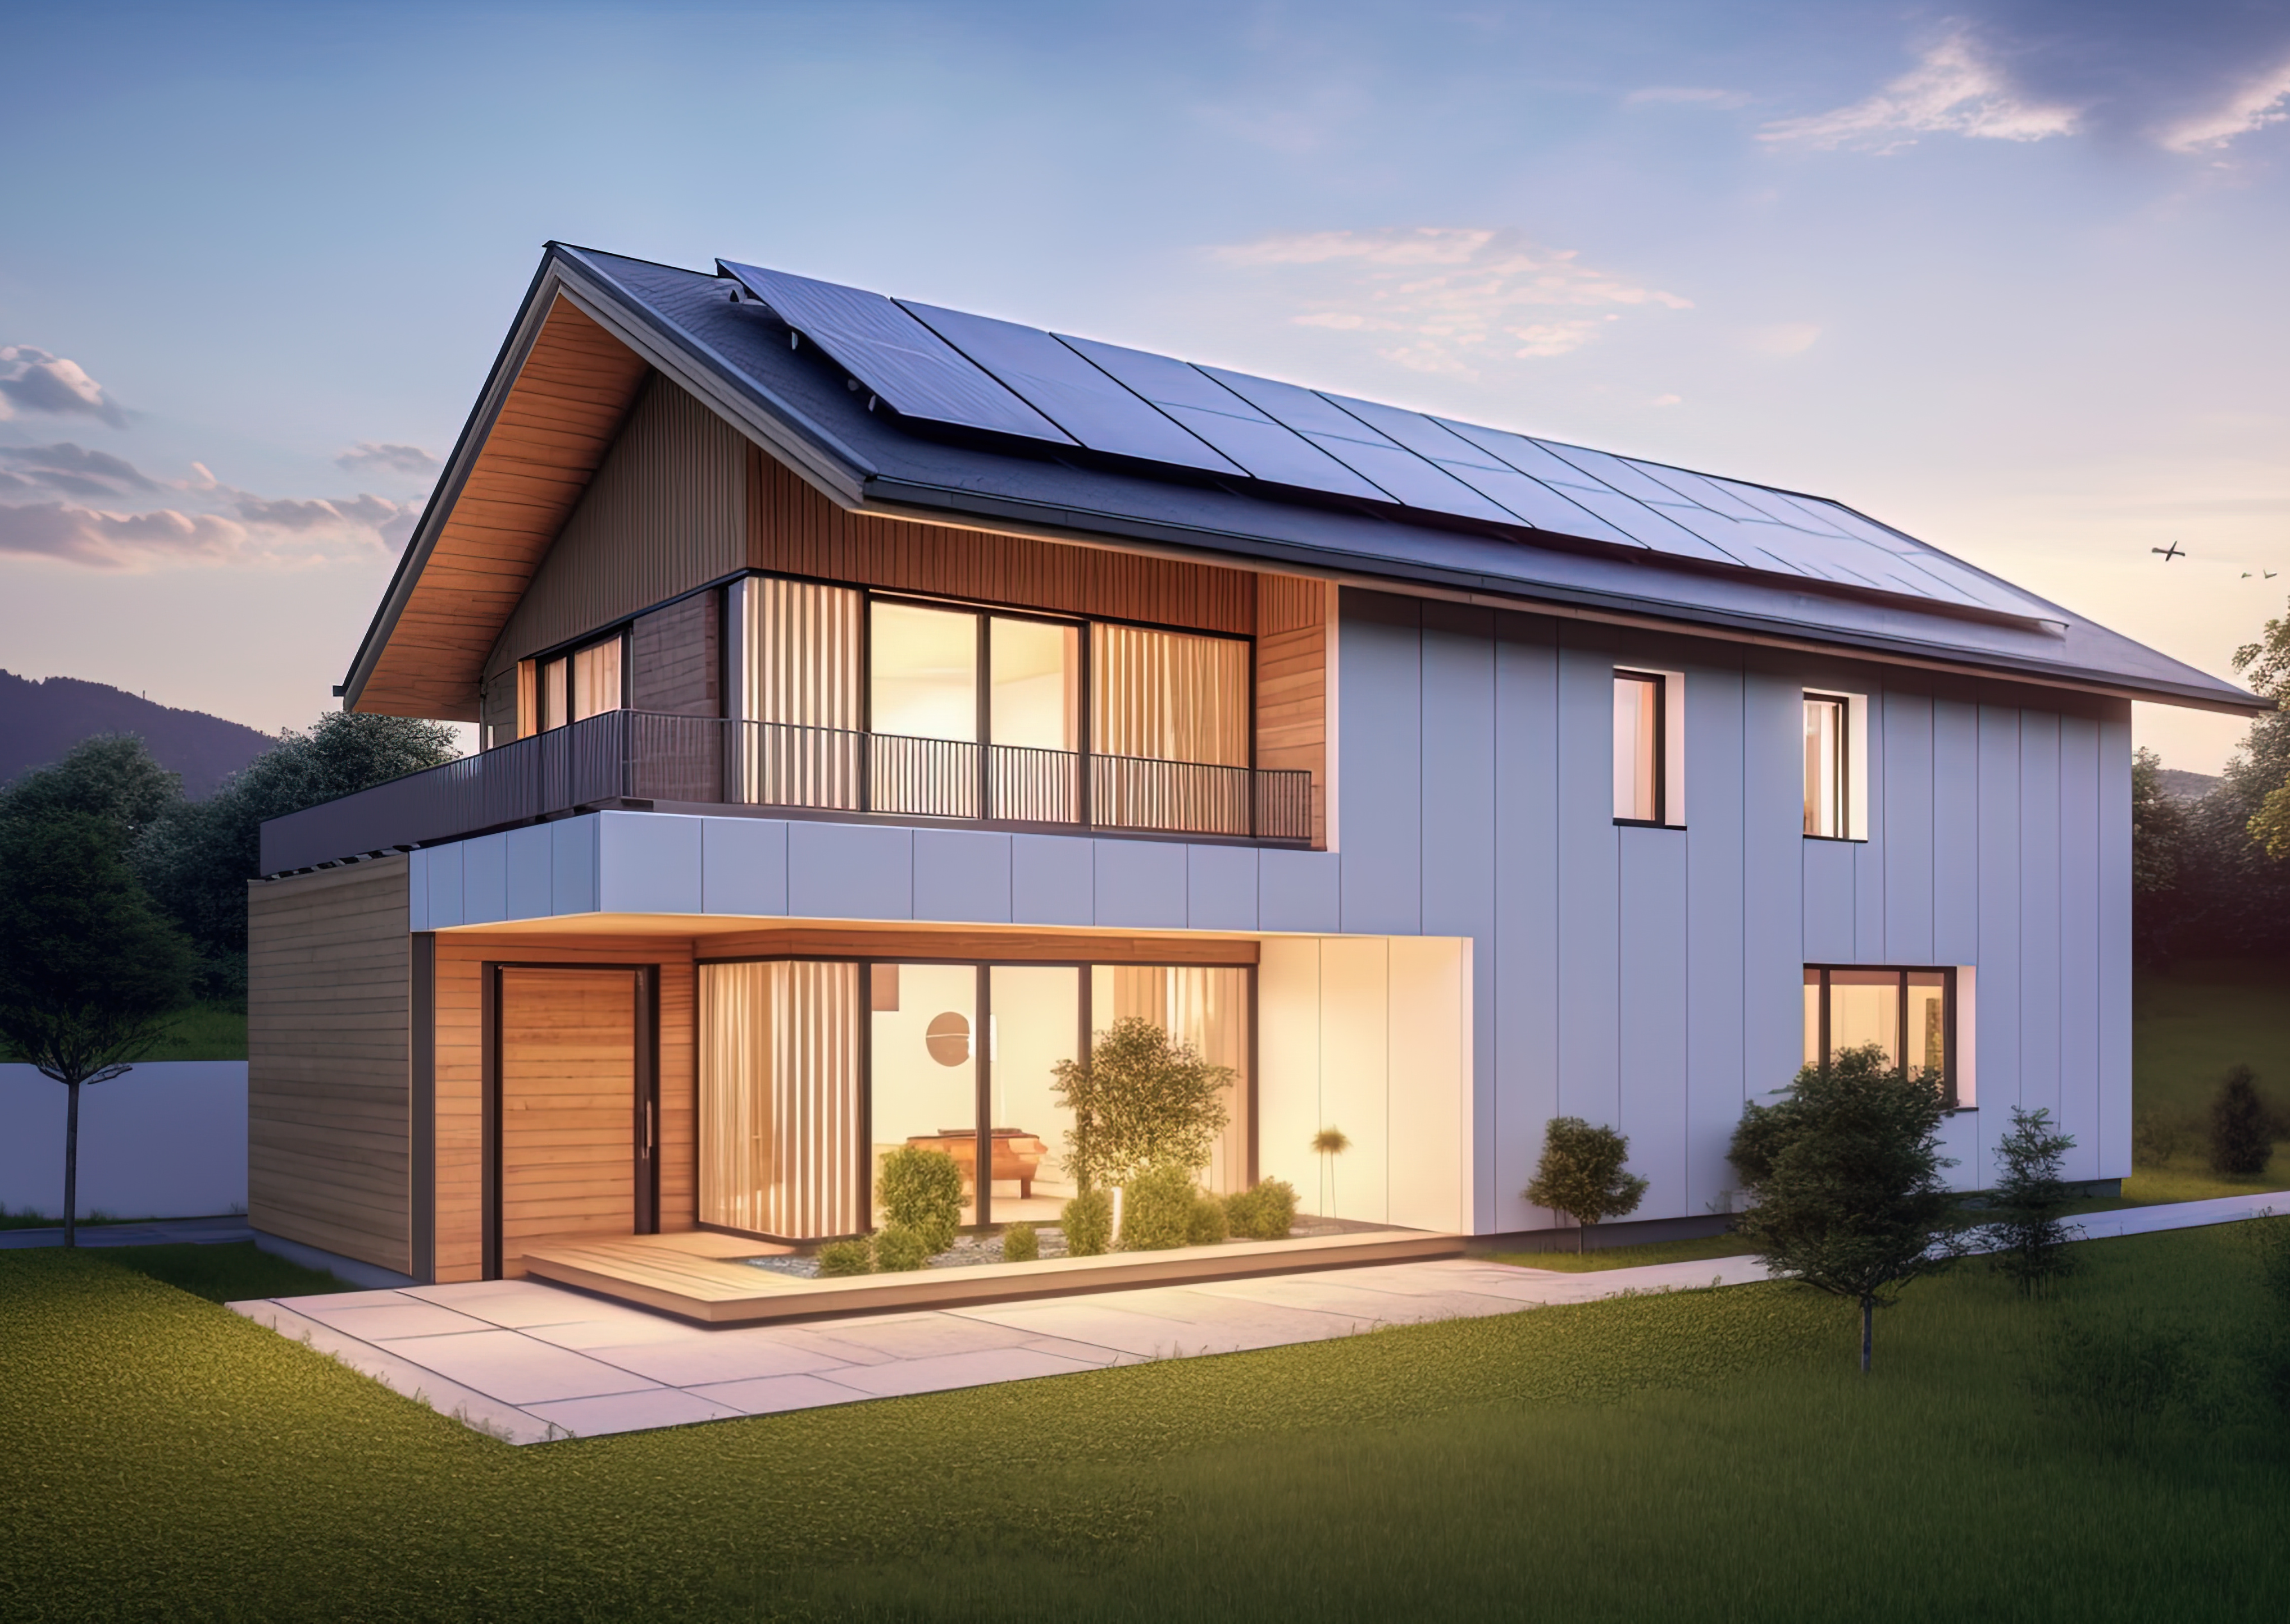 Maison moderne avec des panneaux solaires photovoltaïques sur le toit, en fin de journée avec les lumières allumées.